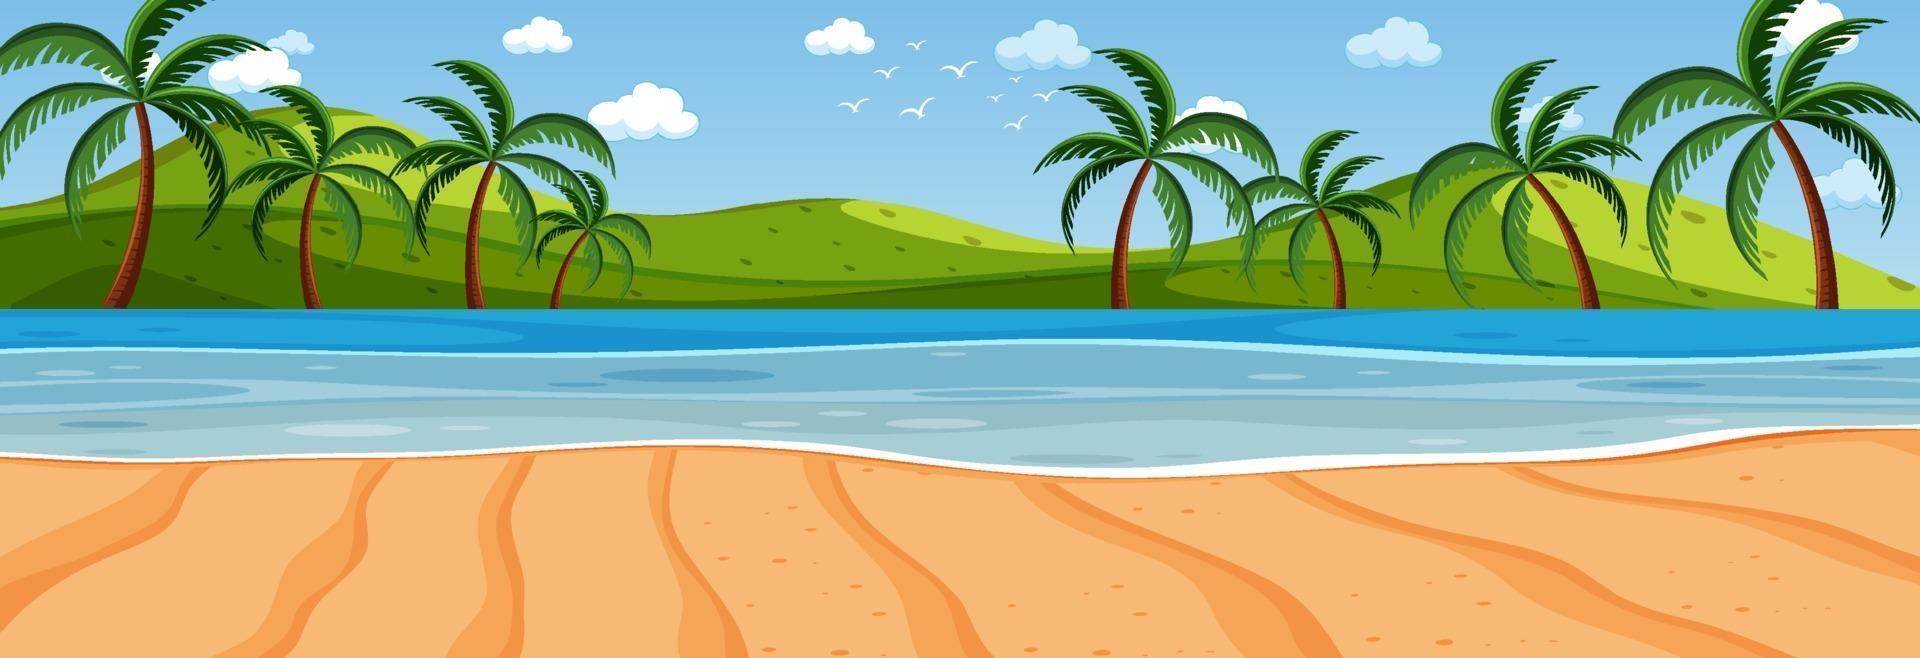 panorama landschapsscène met veel palmbomen op het strand vector